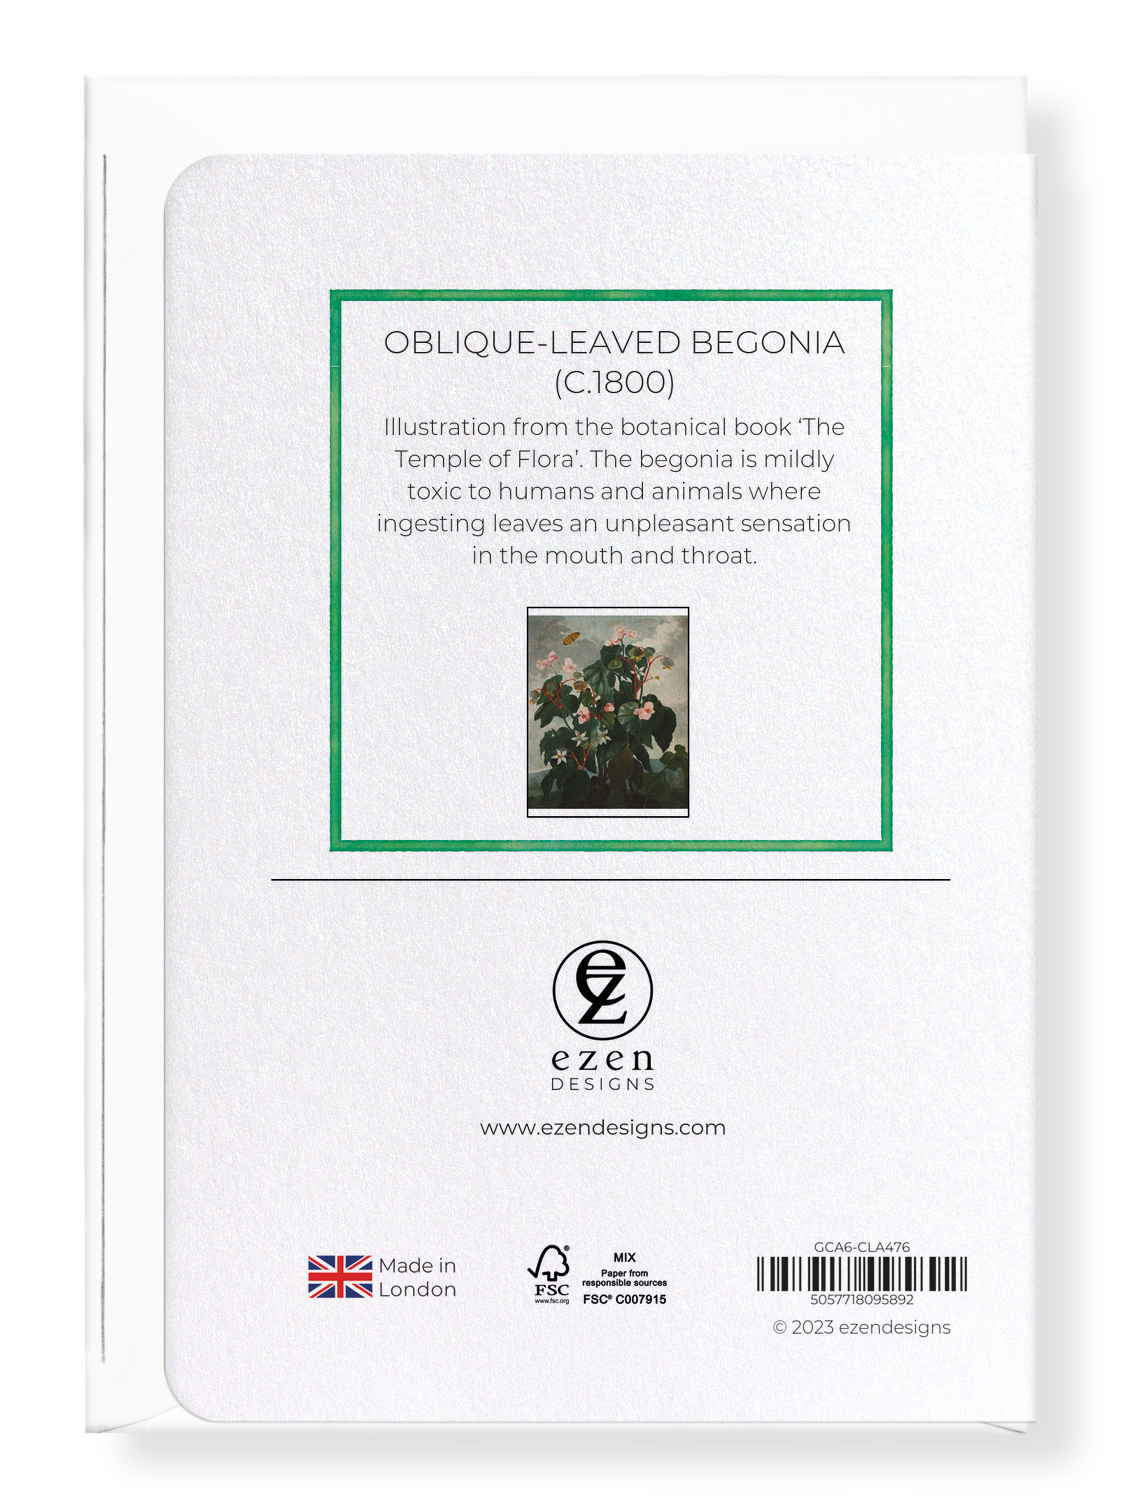 Ezen Designs - Oblique-leaved Begonia (c.1800) - Greeting Card - Back